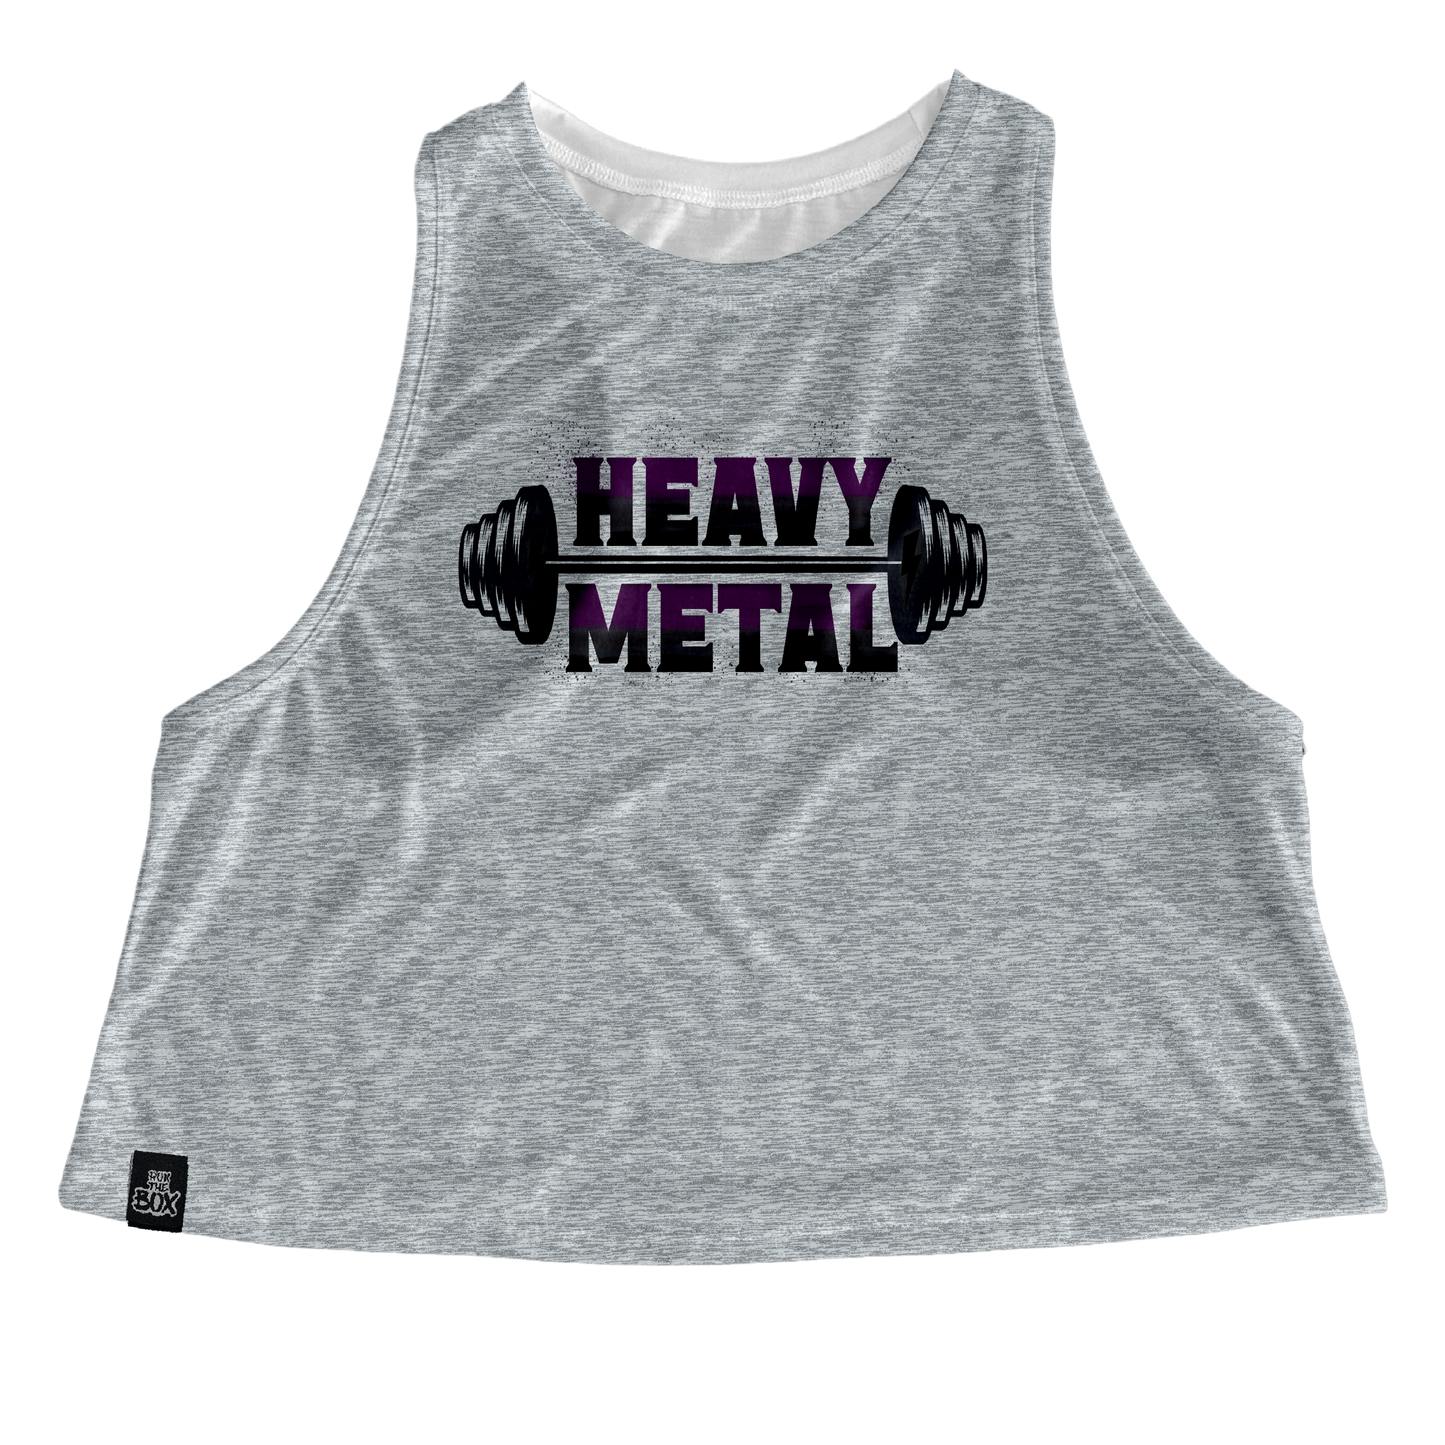 HEAVY METAL (grey)Tops